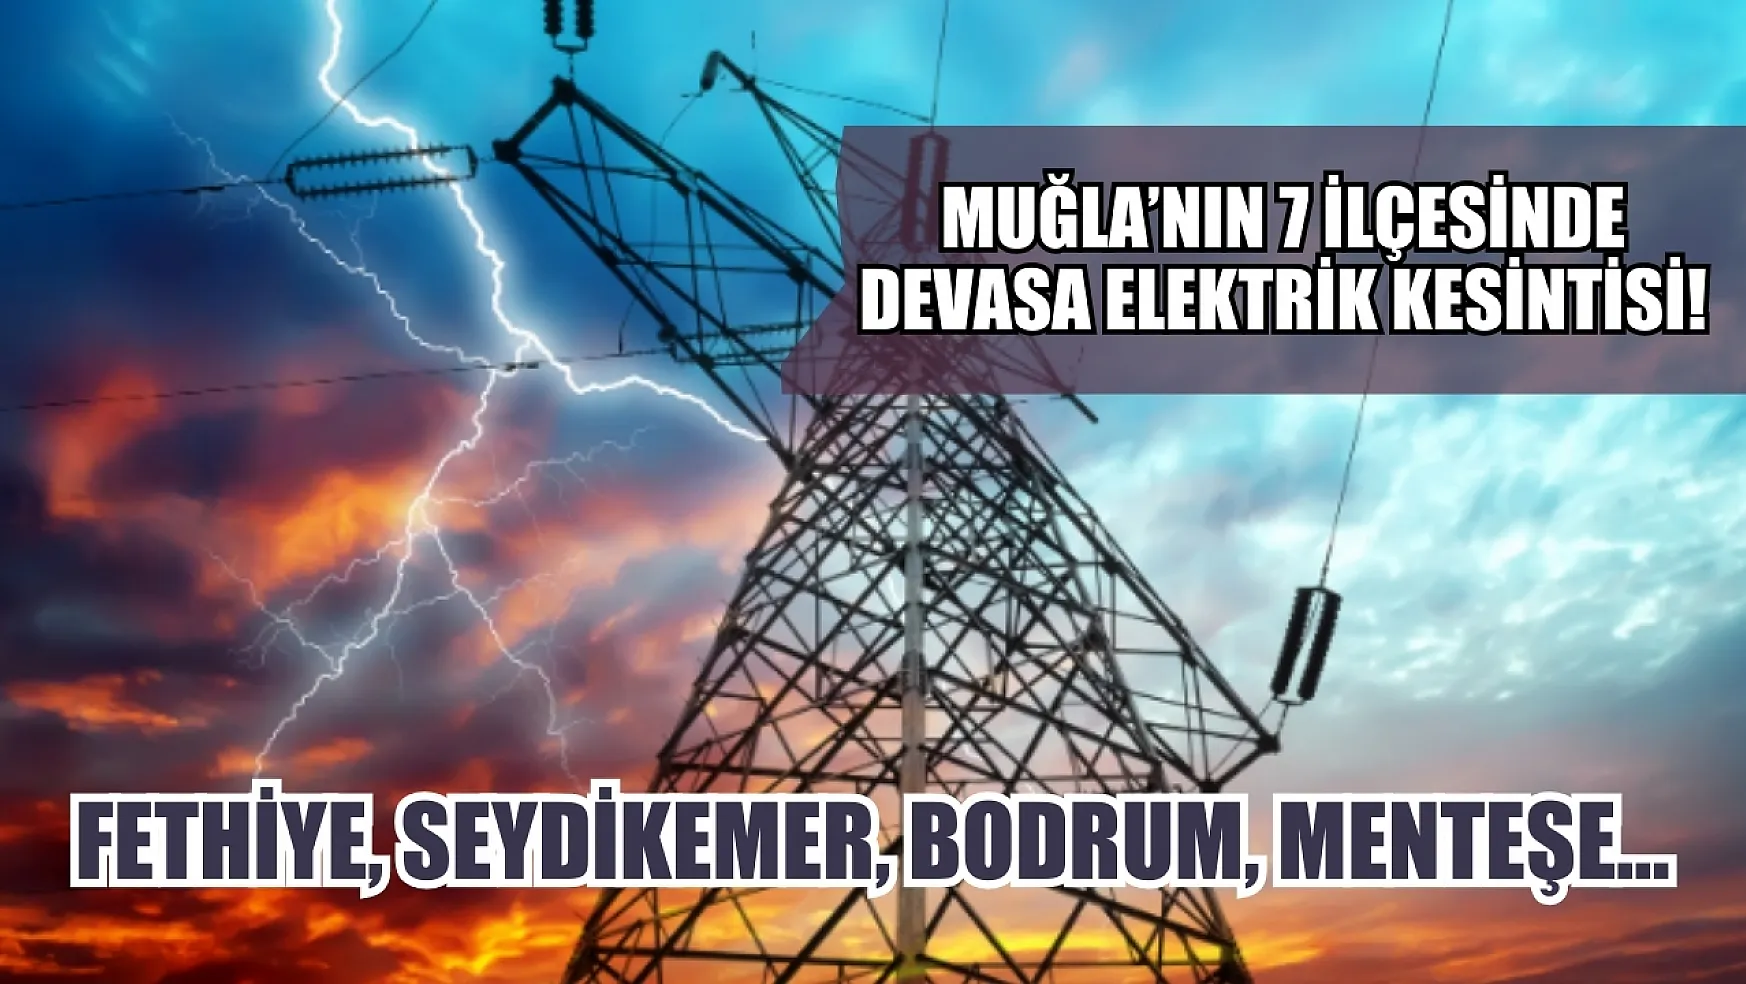 Muğla'nın 7 ilçesinde devasa elektrik kesintisi! Fethiye, Seydikemer, Bodrum, Menteşe…